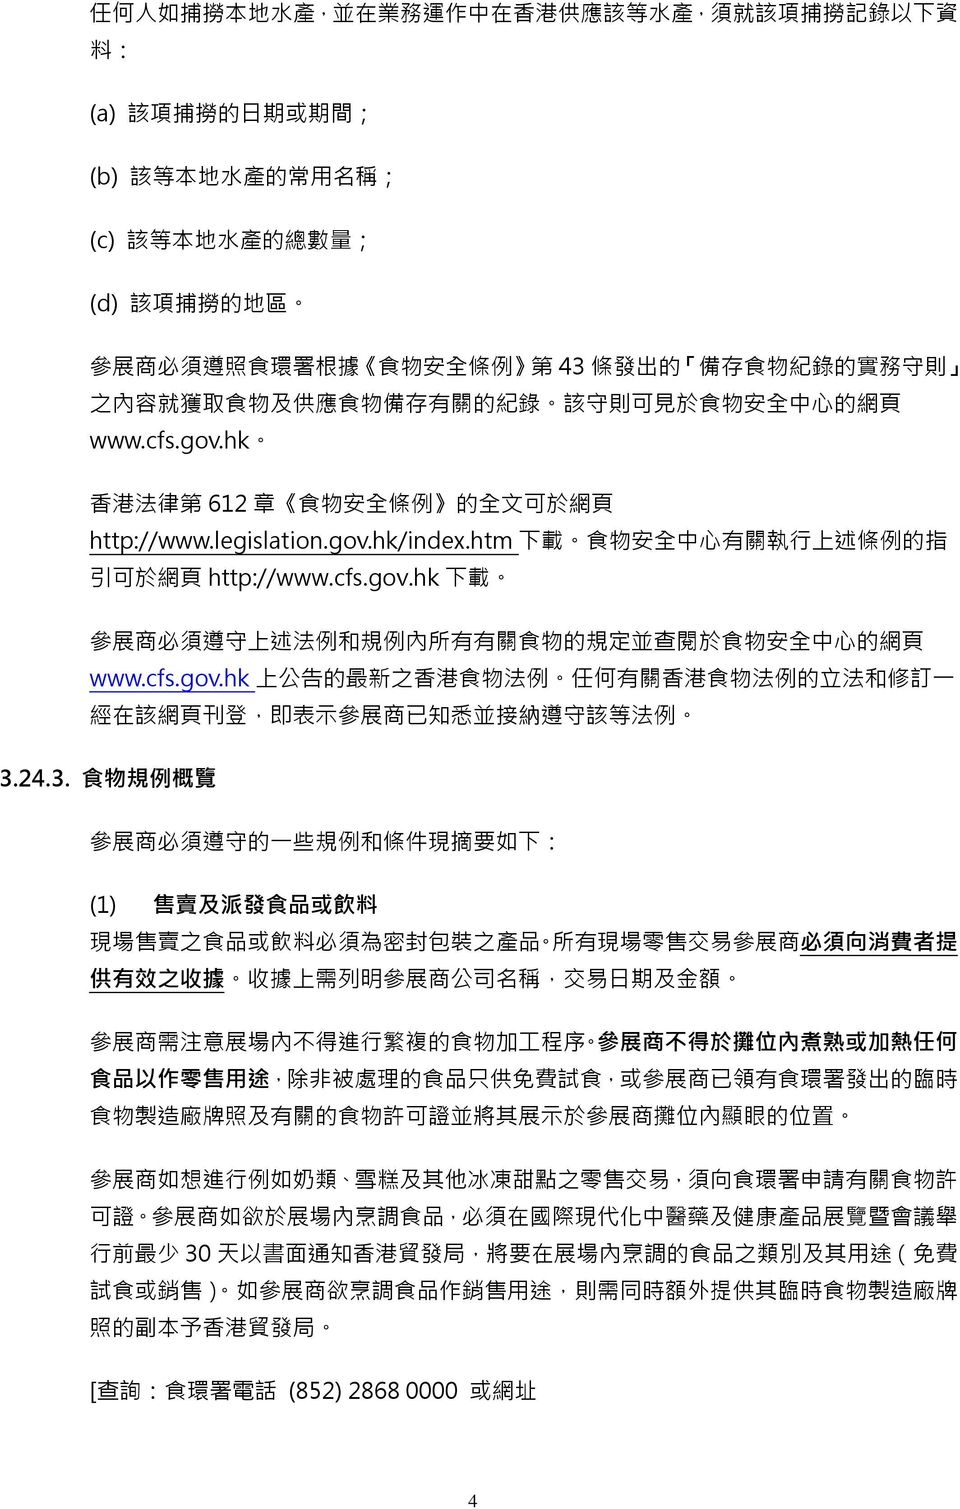 gov.hk/index.htm 下 載 食 物 安 全 中 心 有 關 執 行 上 述 條 例 的 指 引 可 於 網 頁 http://www.cfs.gov.hk 下 載 參 展 商 必 須 遵 守 上 述 法 例 和 規 例 內 所 有 有 關 食 物 的 規 定 並 查 閱 於 食 物 安 全 中 心 的 網 頁 www.cfs.gov.hk 上 公 告 的 最 新 之 香 港 食 物 法 例 任 何 有 關 香 港 食 物 法 例 的 立 法 和 修 訂 一 經 在 該 網 頁 刊 登, 即 表 示 參 展 商 已 知 悉 並 接 納 遵 守 該 等 法 例 3.